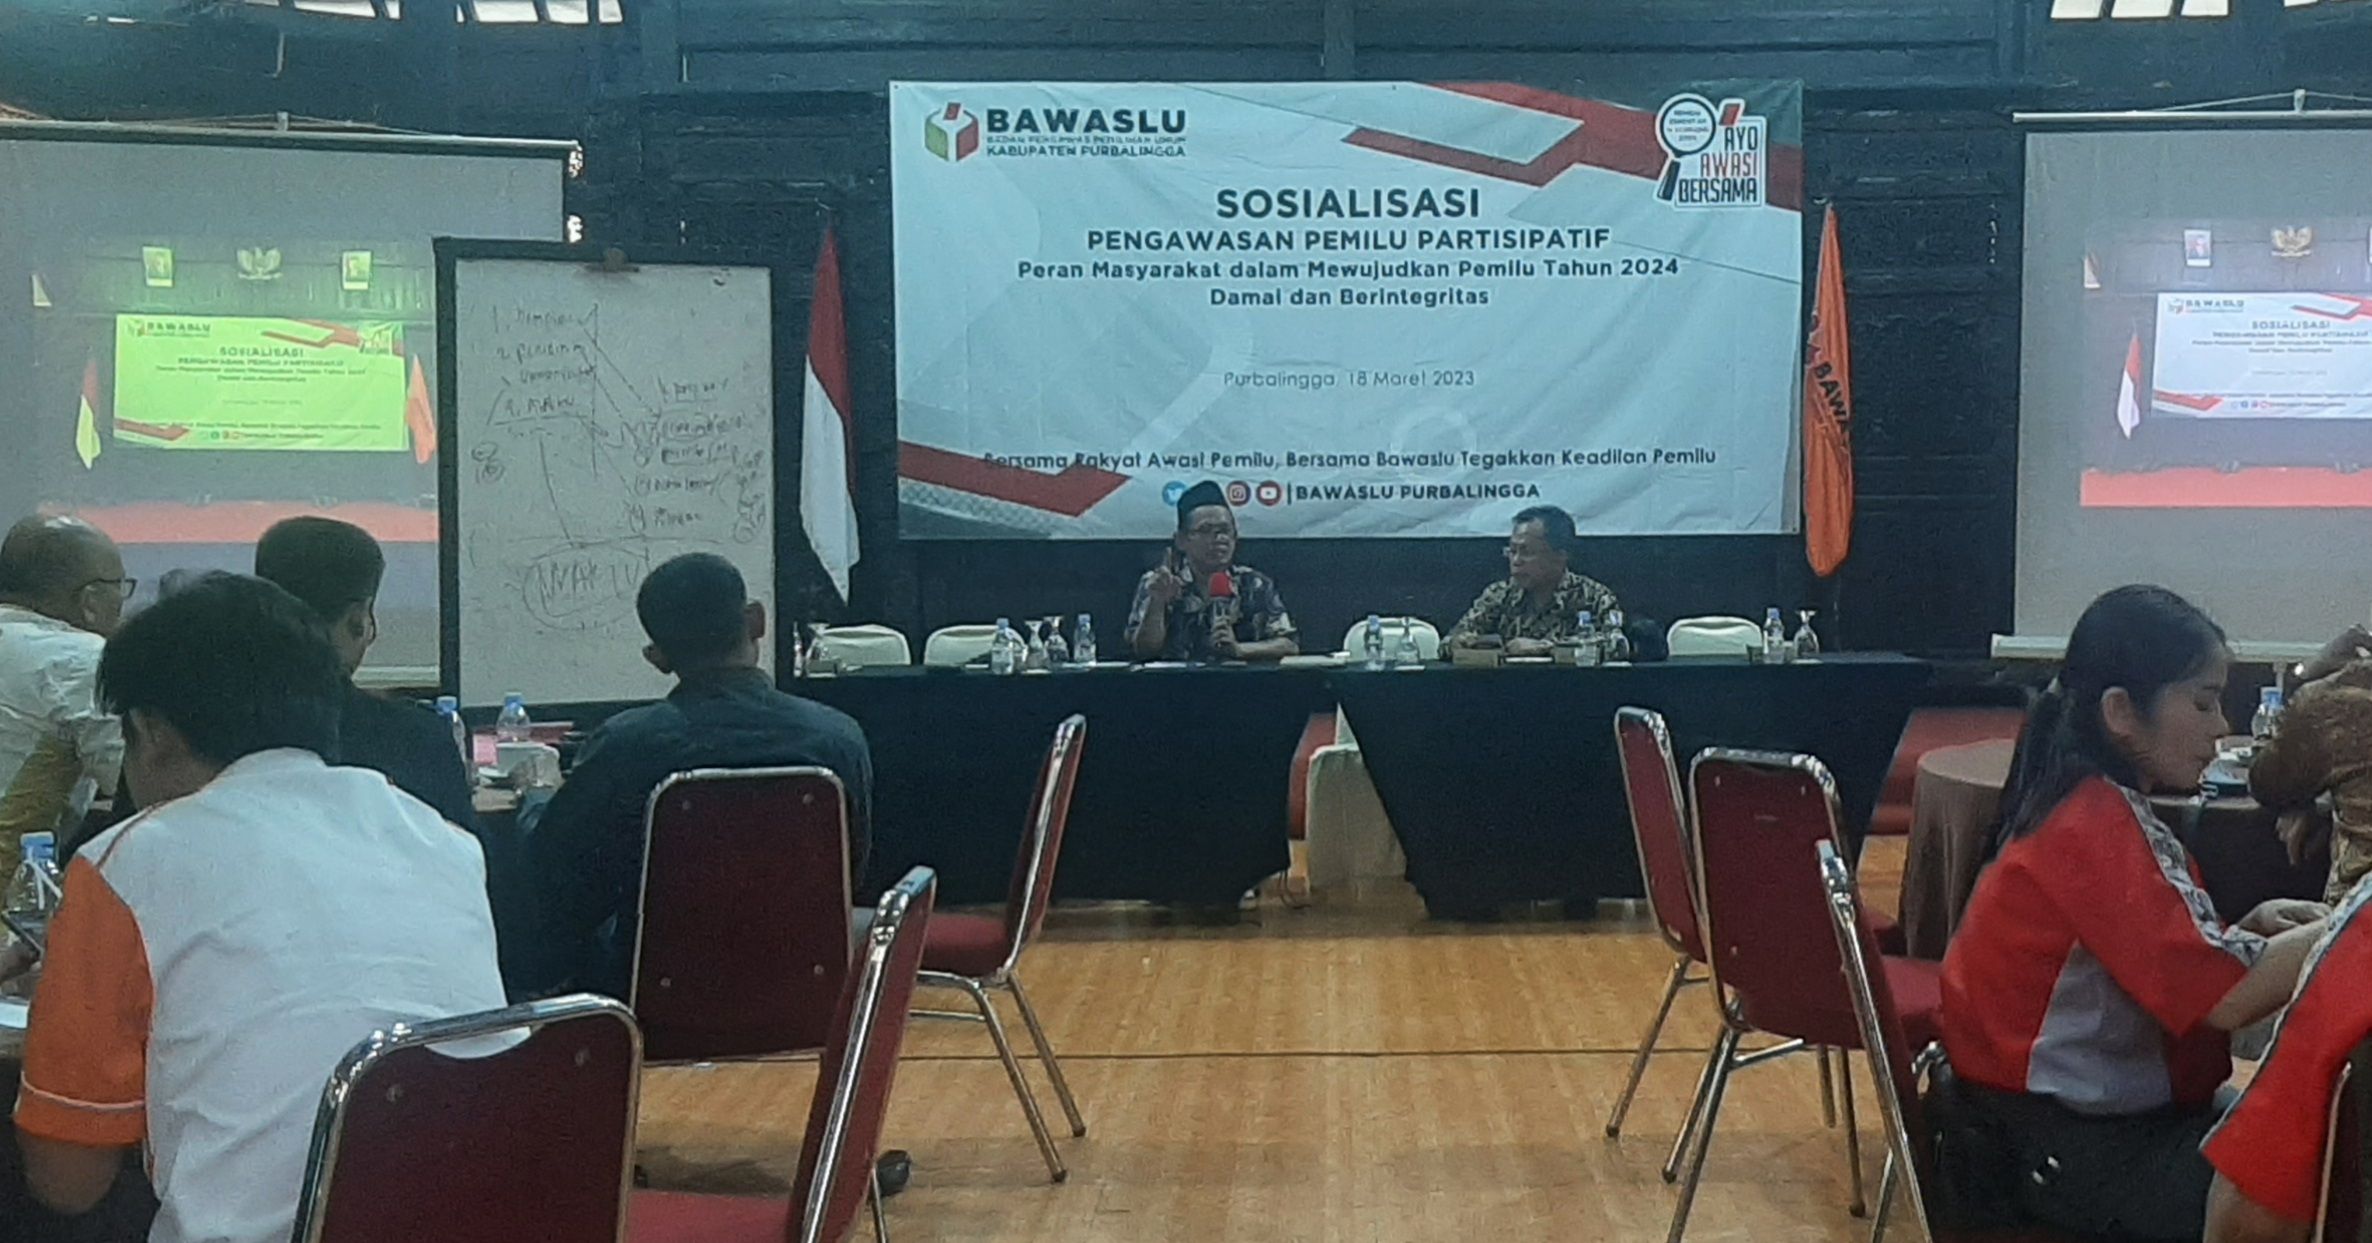 Suasana Sosialisasi Pengawasan Pemilu Partisipatif yang digelar Bawaslu Purbalingga di kawasan Owabong, Sabtu 18 Maret 2023.